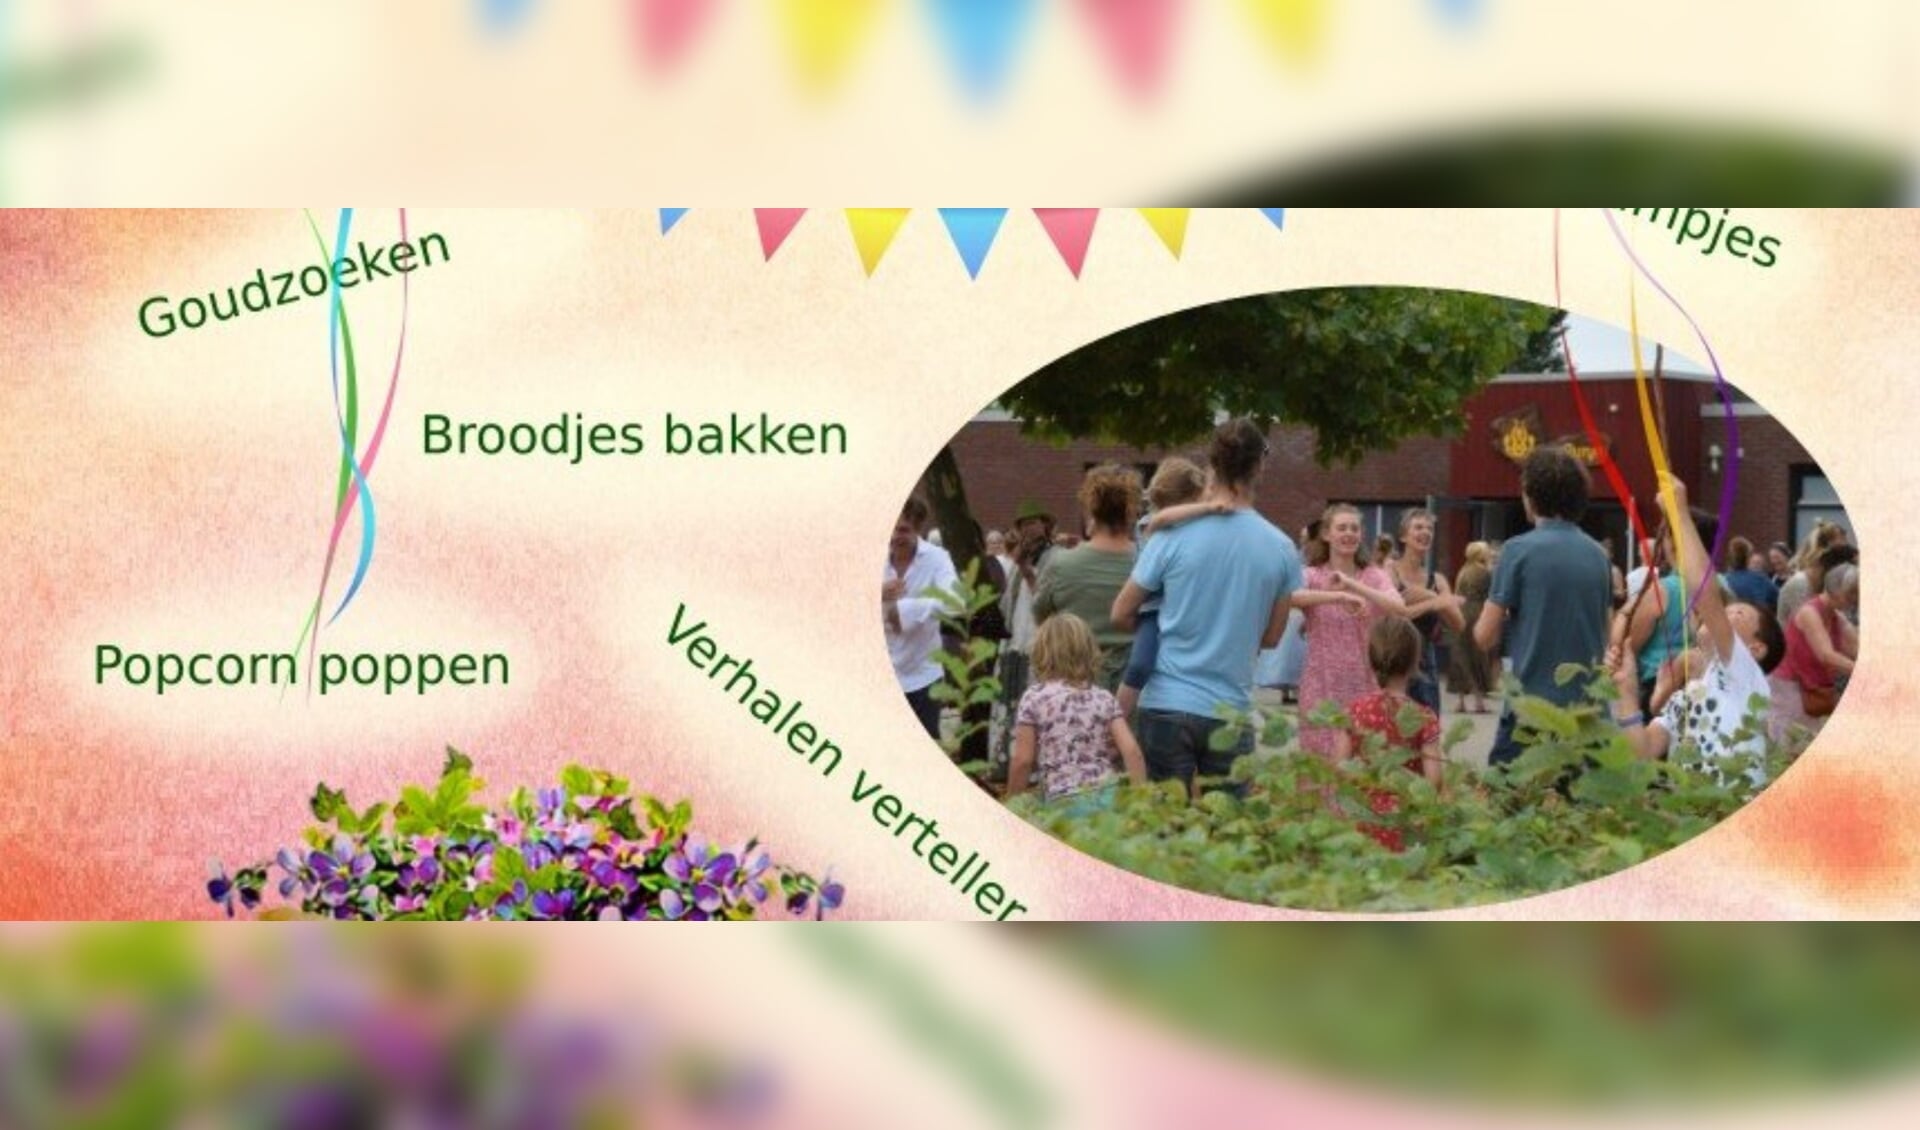 Auryn, de nieuwe basisschool in Zutphen, organiseert een open dag. Foto: PR